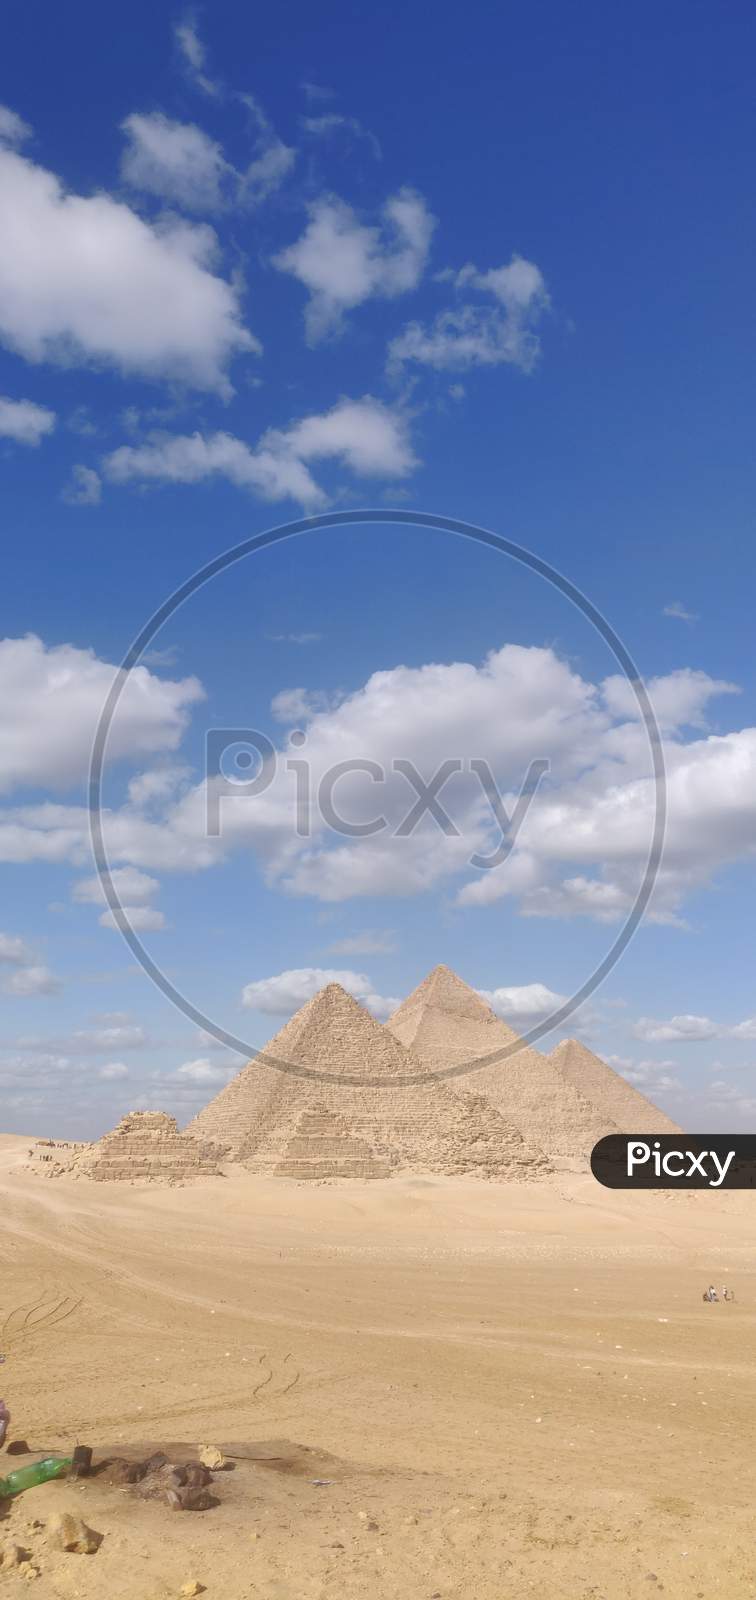 Giza Pyramids in Egypt